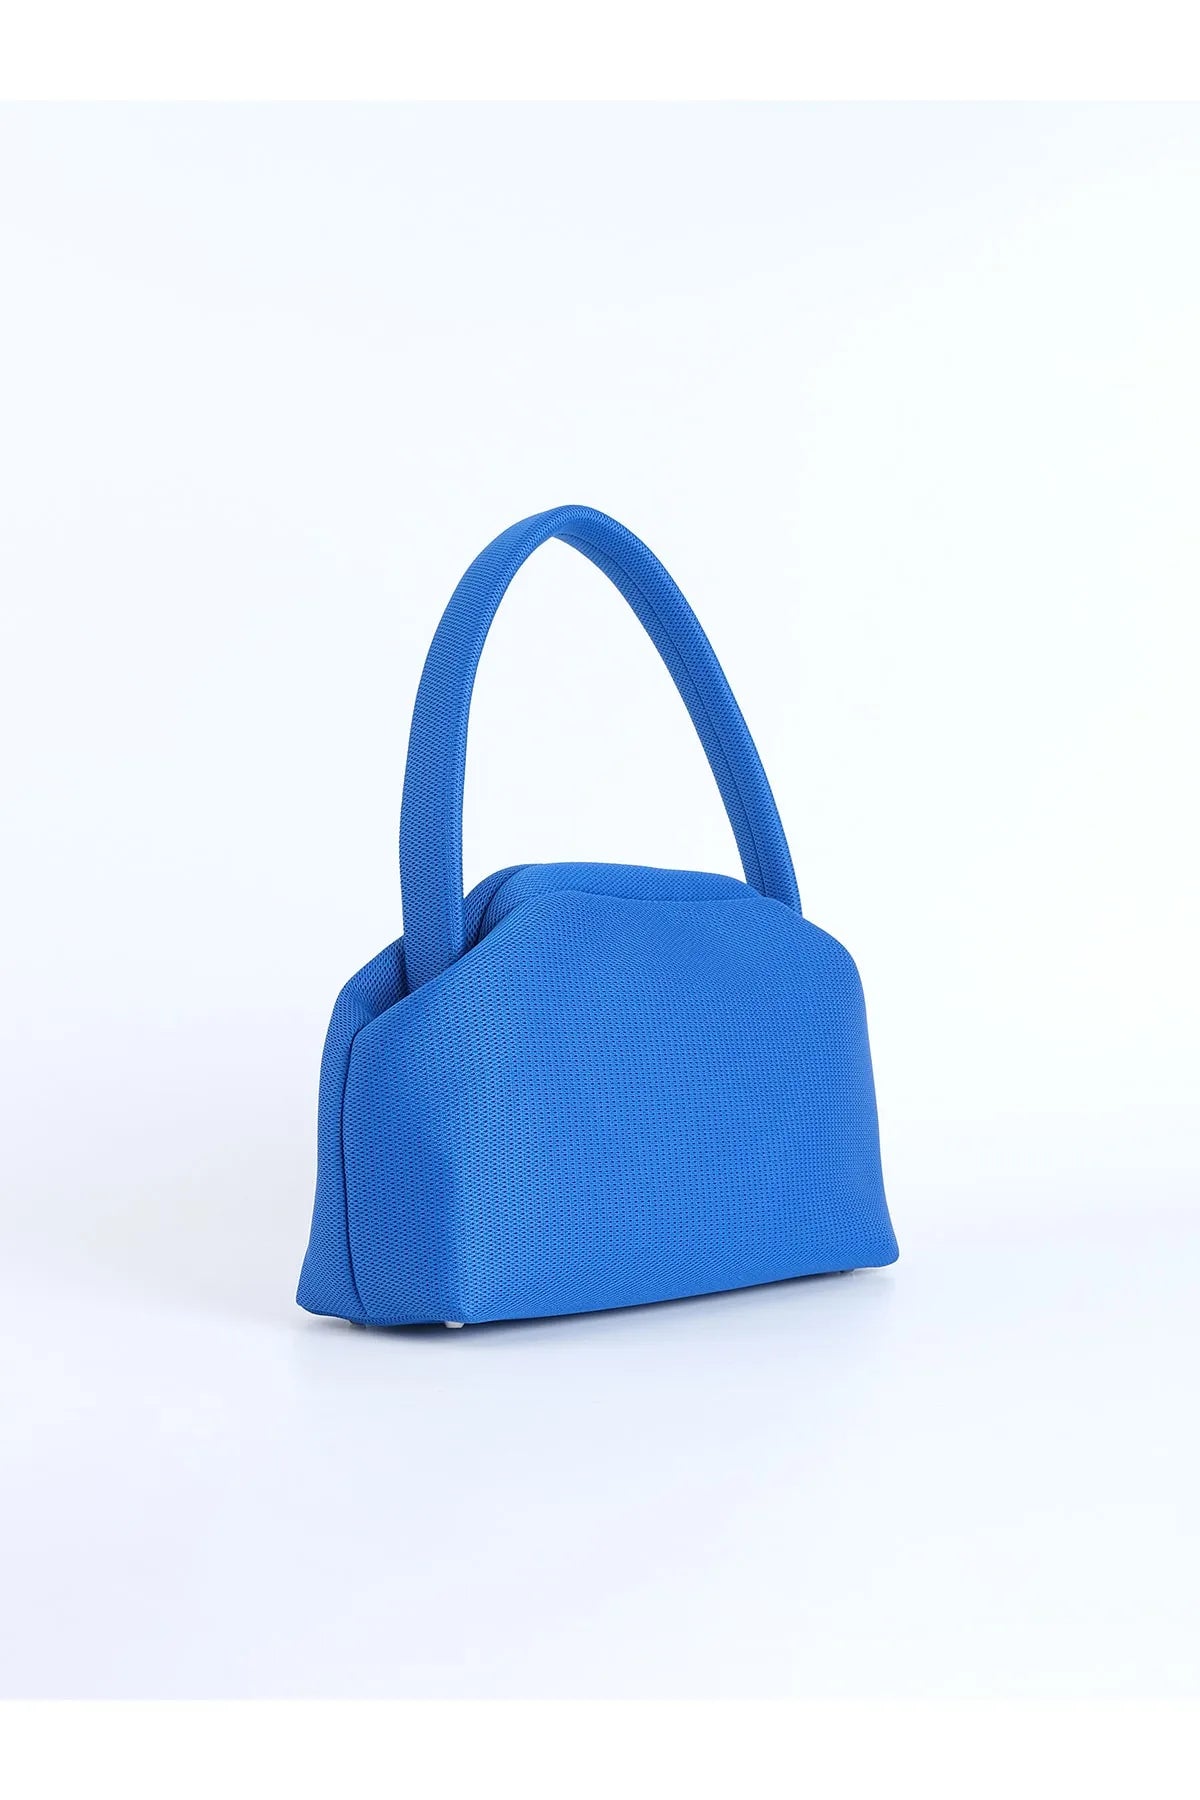 Sax Blue Shoulder Bag shoulder bag LUNARITY GARAGE   